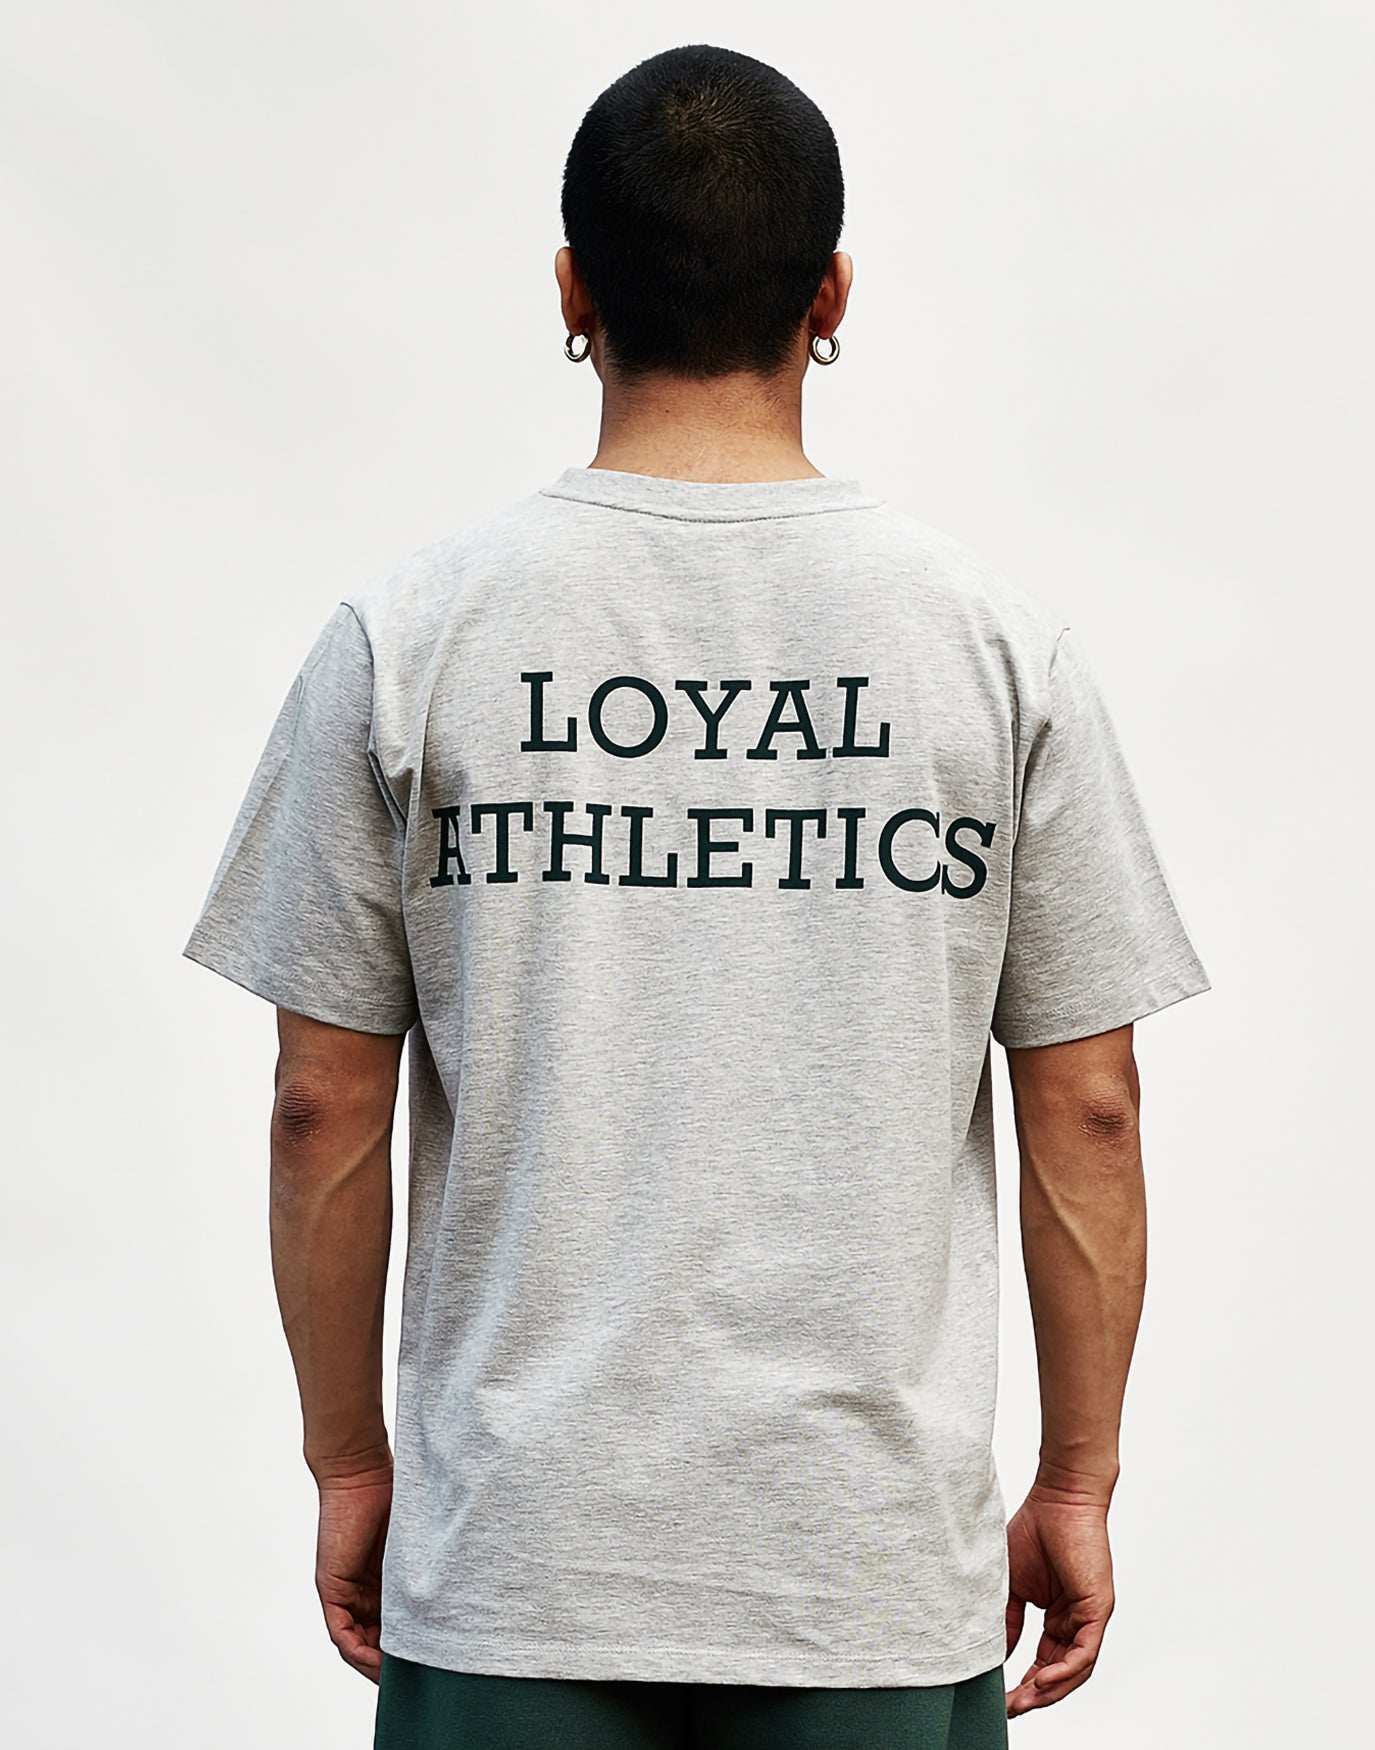 Team Loyal Athletics Tee